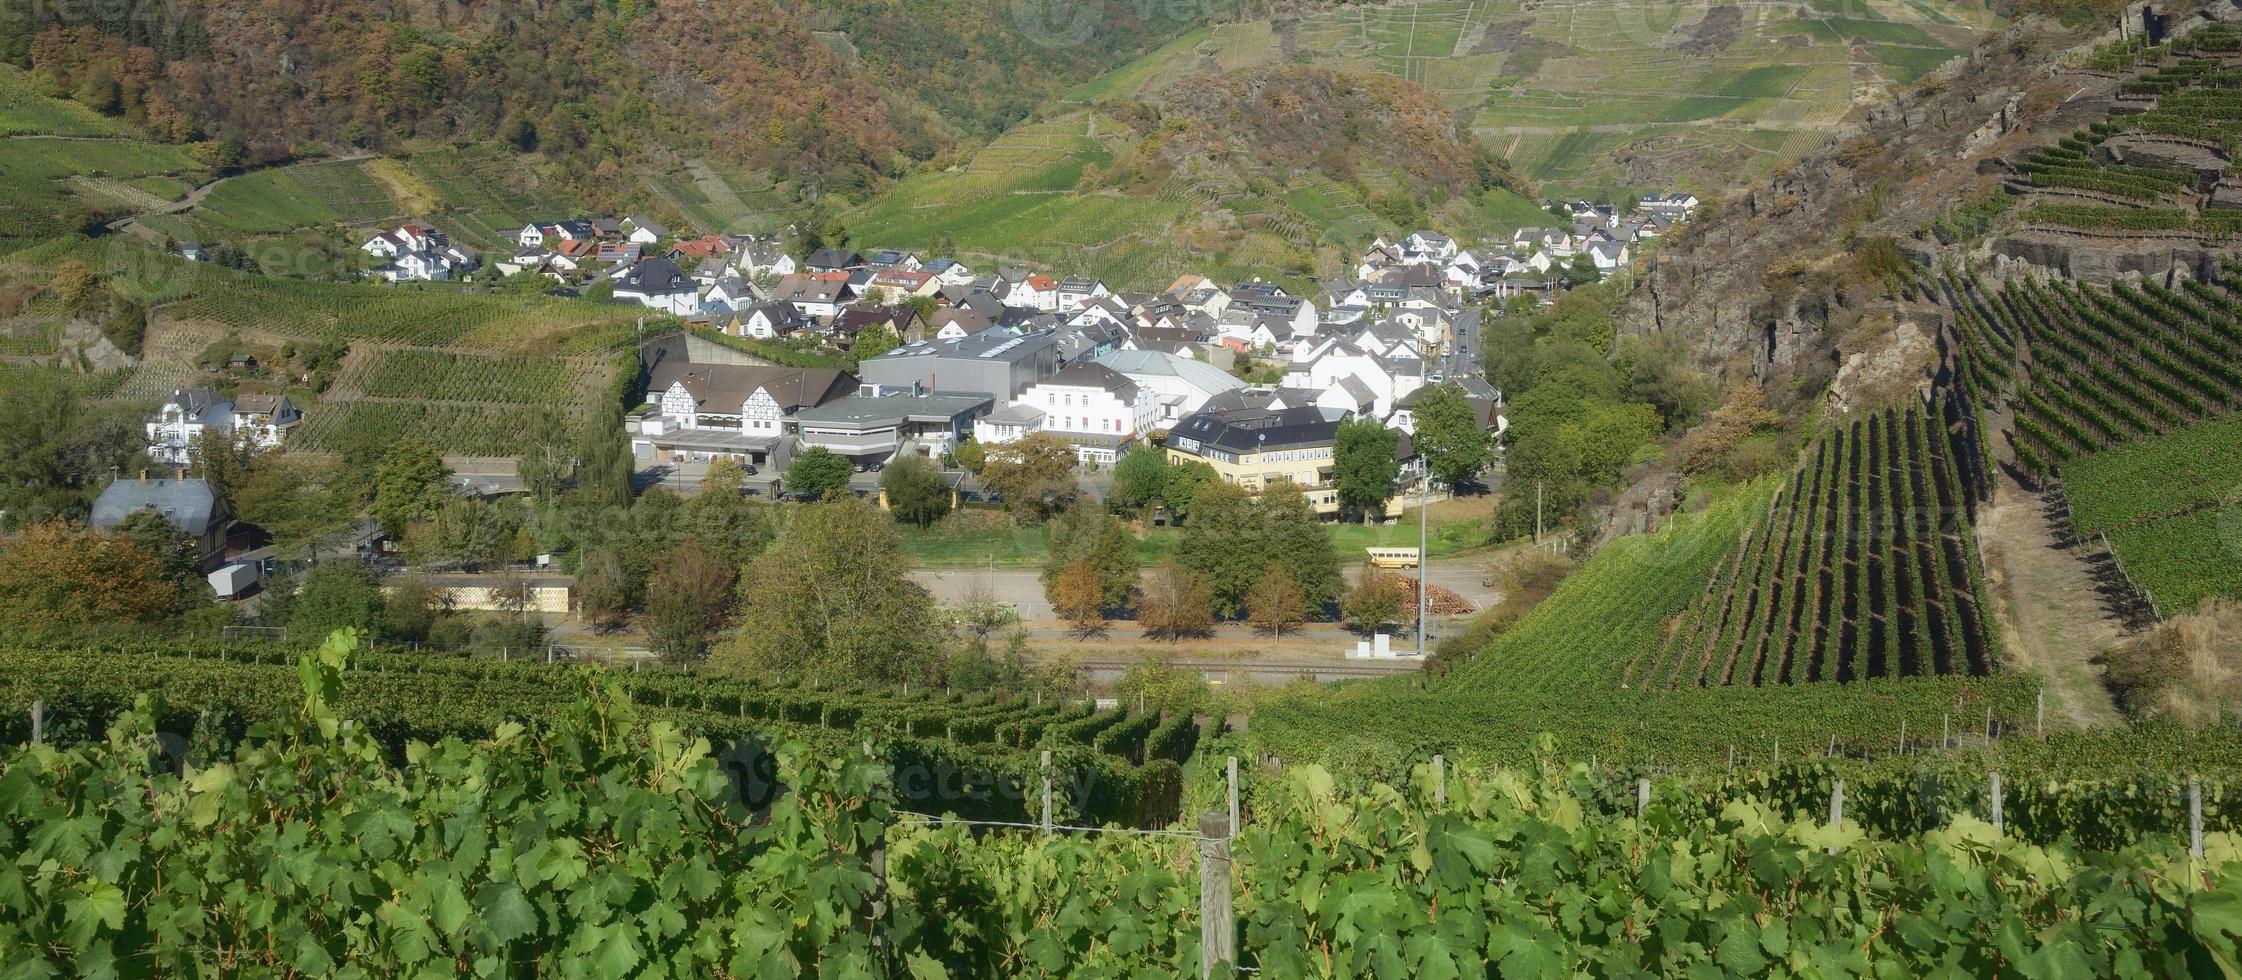 du vin village de mayschoss avant le inonder 2021, ahrtal, rhénanie-palatinat, allemagne photo